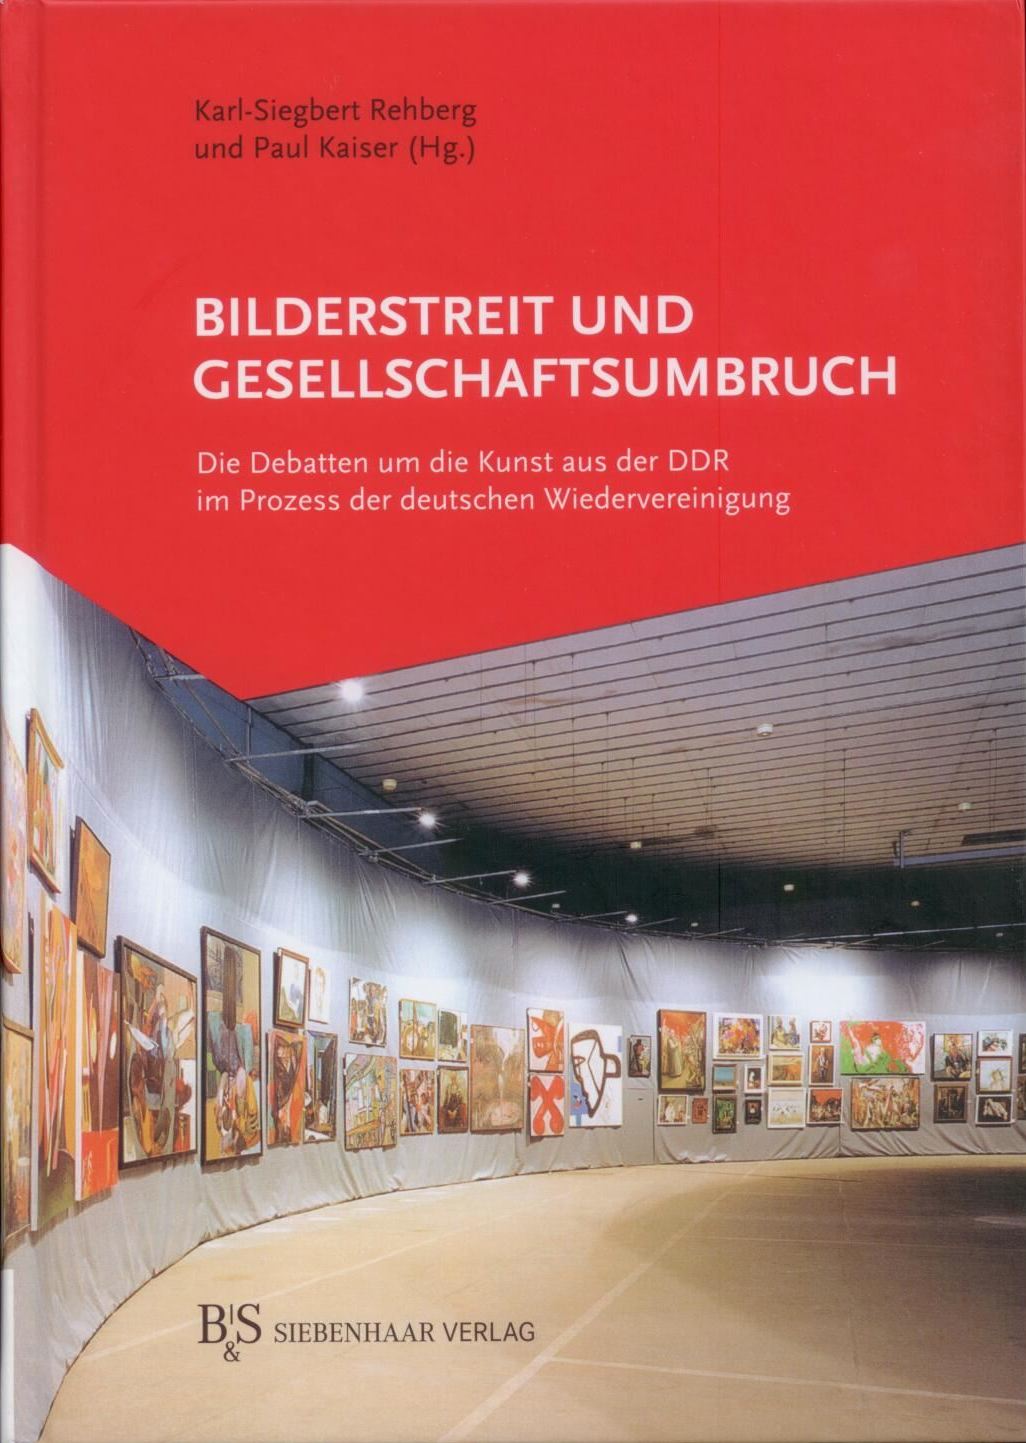 Bilderstreit und Gesellschaftsumbruch, Bild: Hrsg. von Karl-Siegbert Rehberg und Paul Kaiser. Berlin/Kassel: Siebenhaar, 2013..